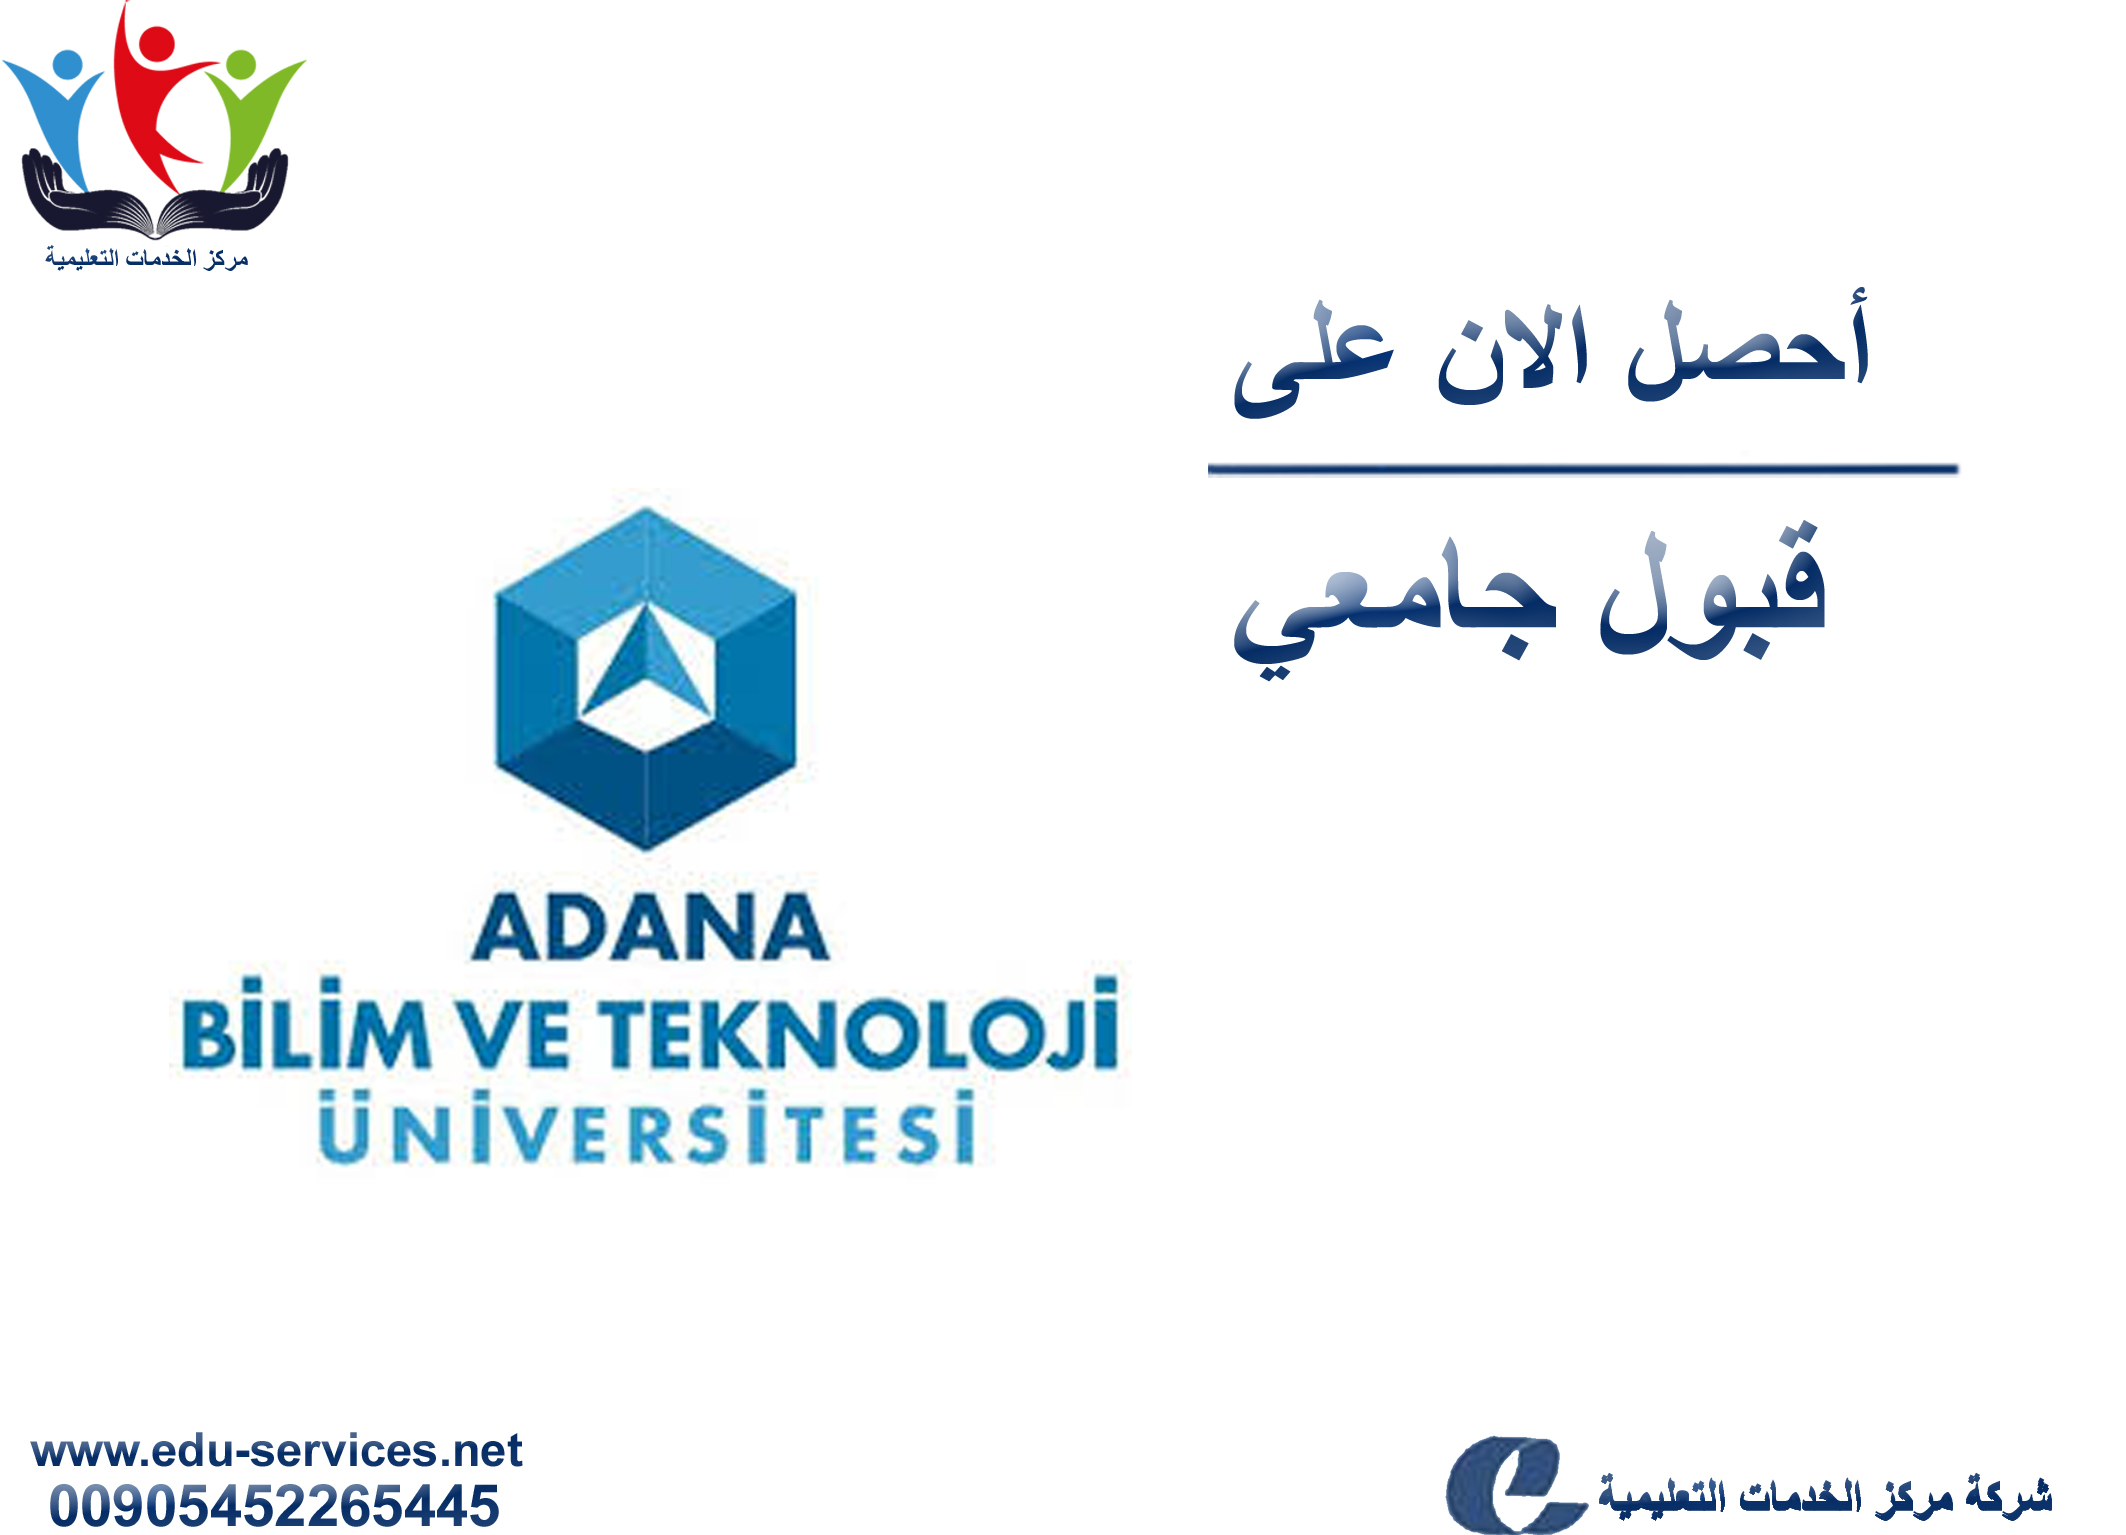 افتتاح التسجيل في جامعة أضنة للعلوم والتكنولوجيا للعام 2018-2019